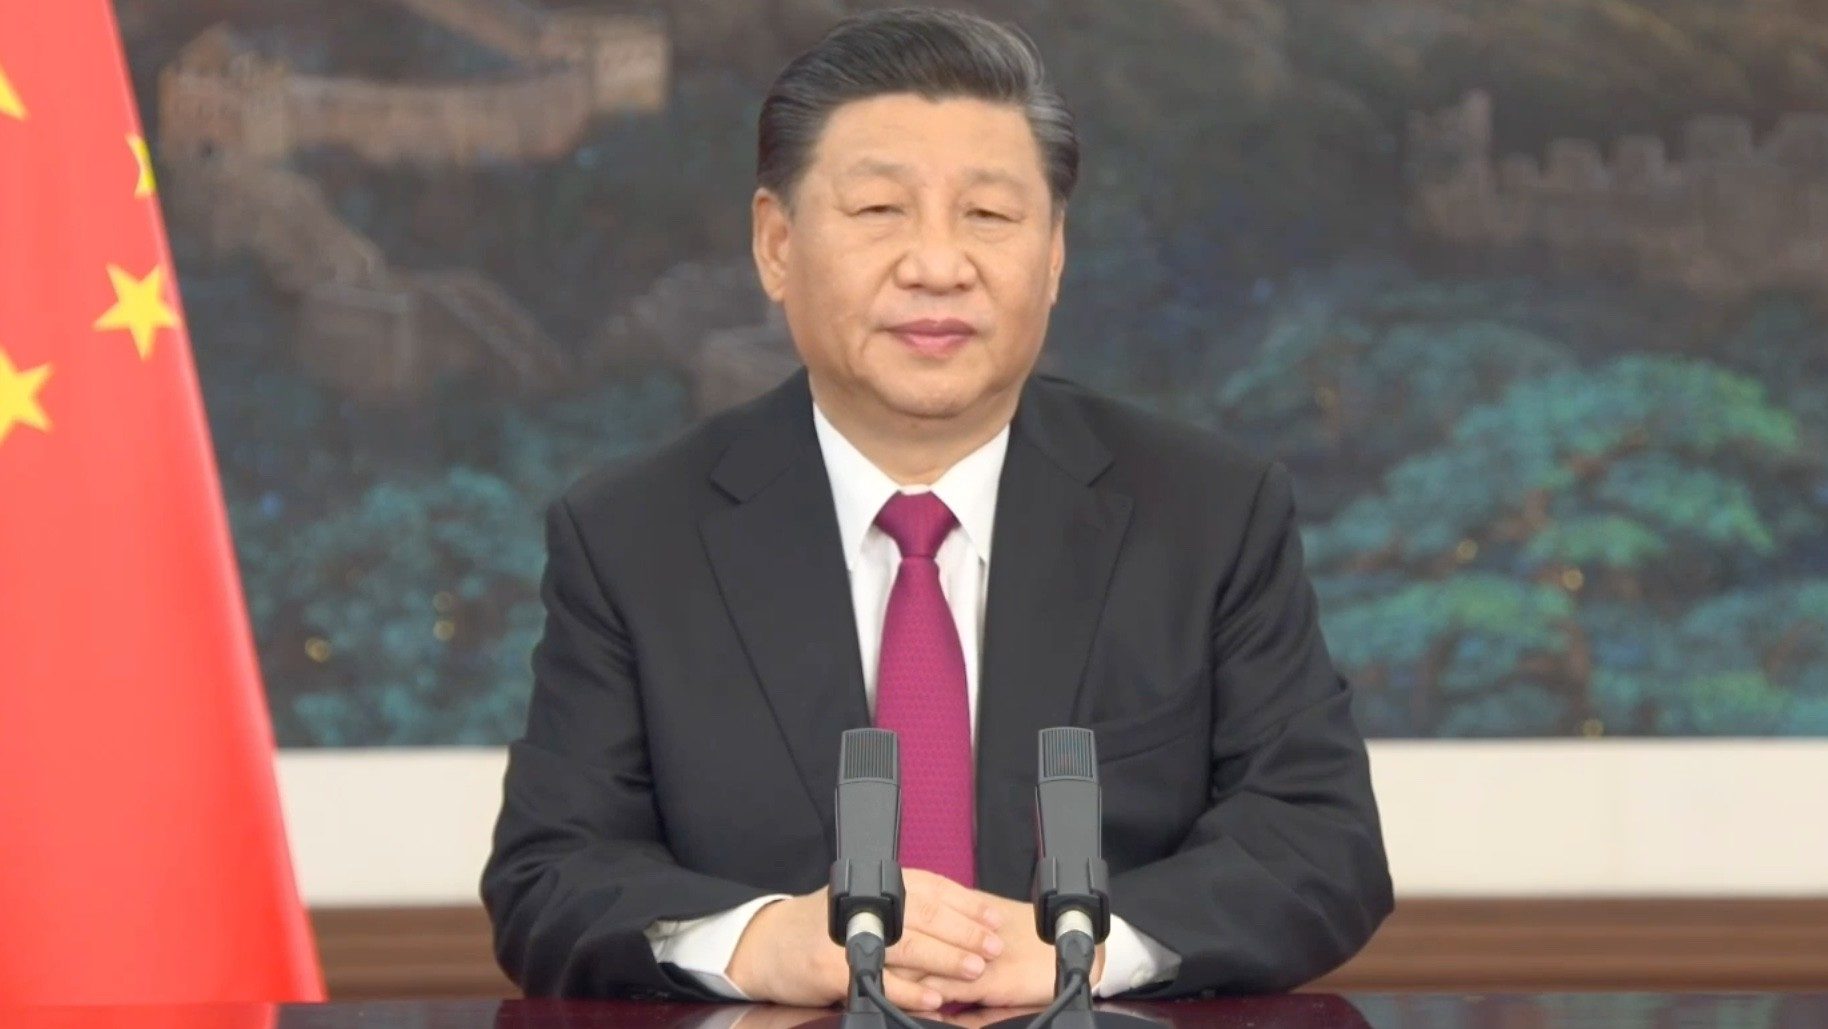 China quer liderar o mundo na direção do desenvolvimento e economia verdes, diz Xi Jinping, presidente da China, em mensagem a Davos (Foto: Fórum Econômico Mundial)